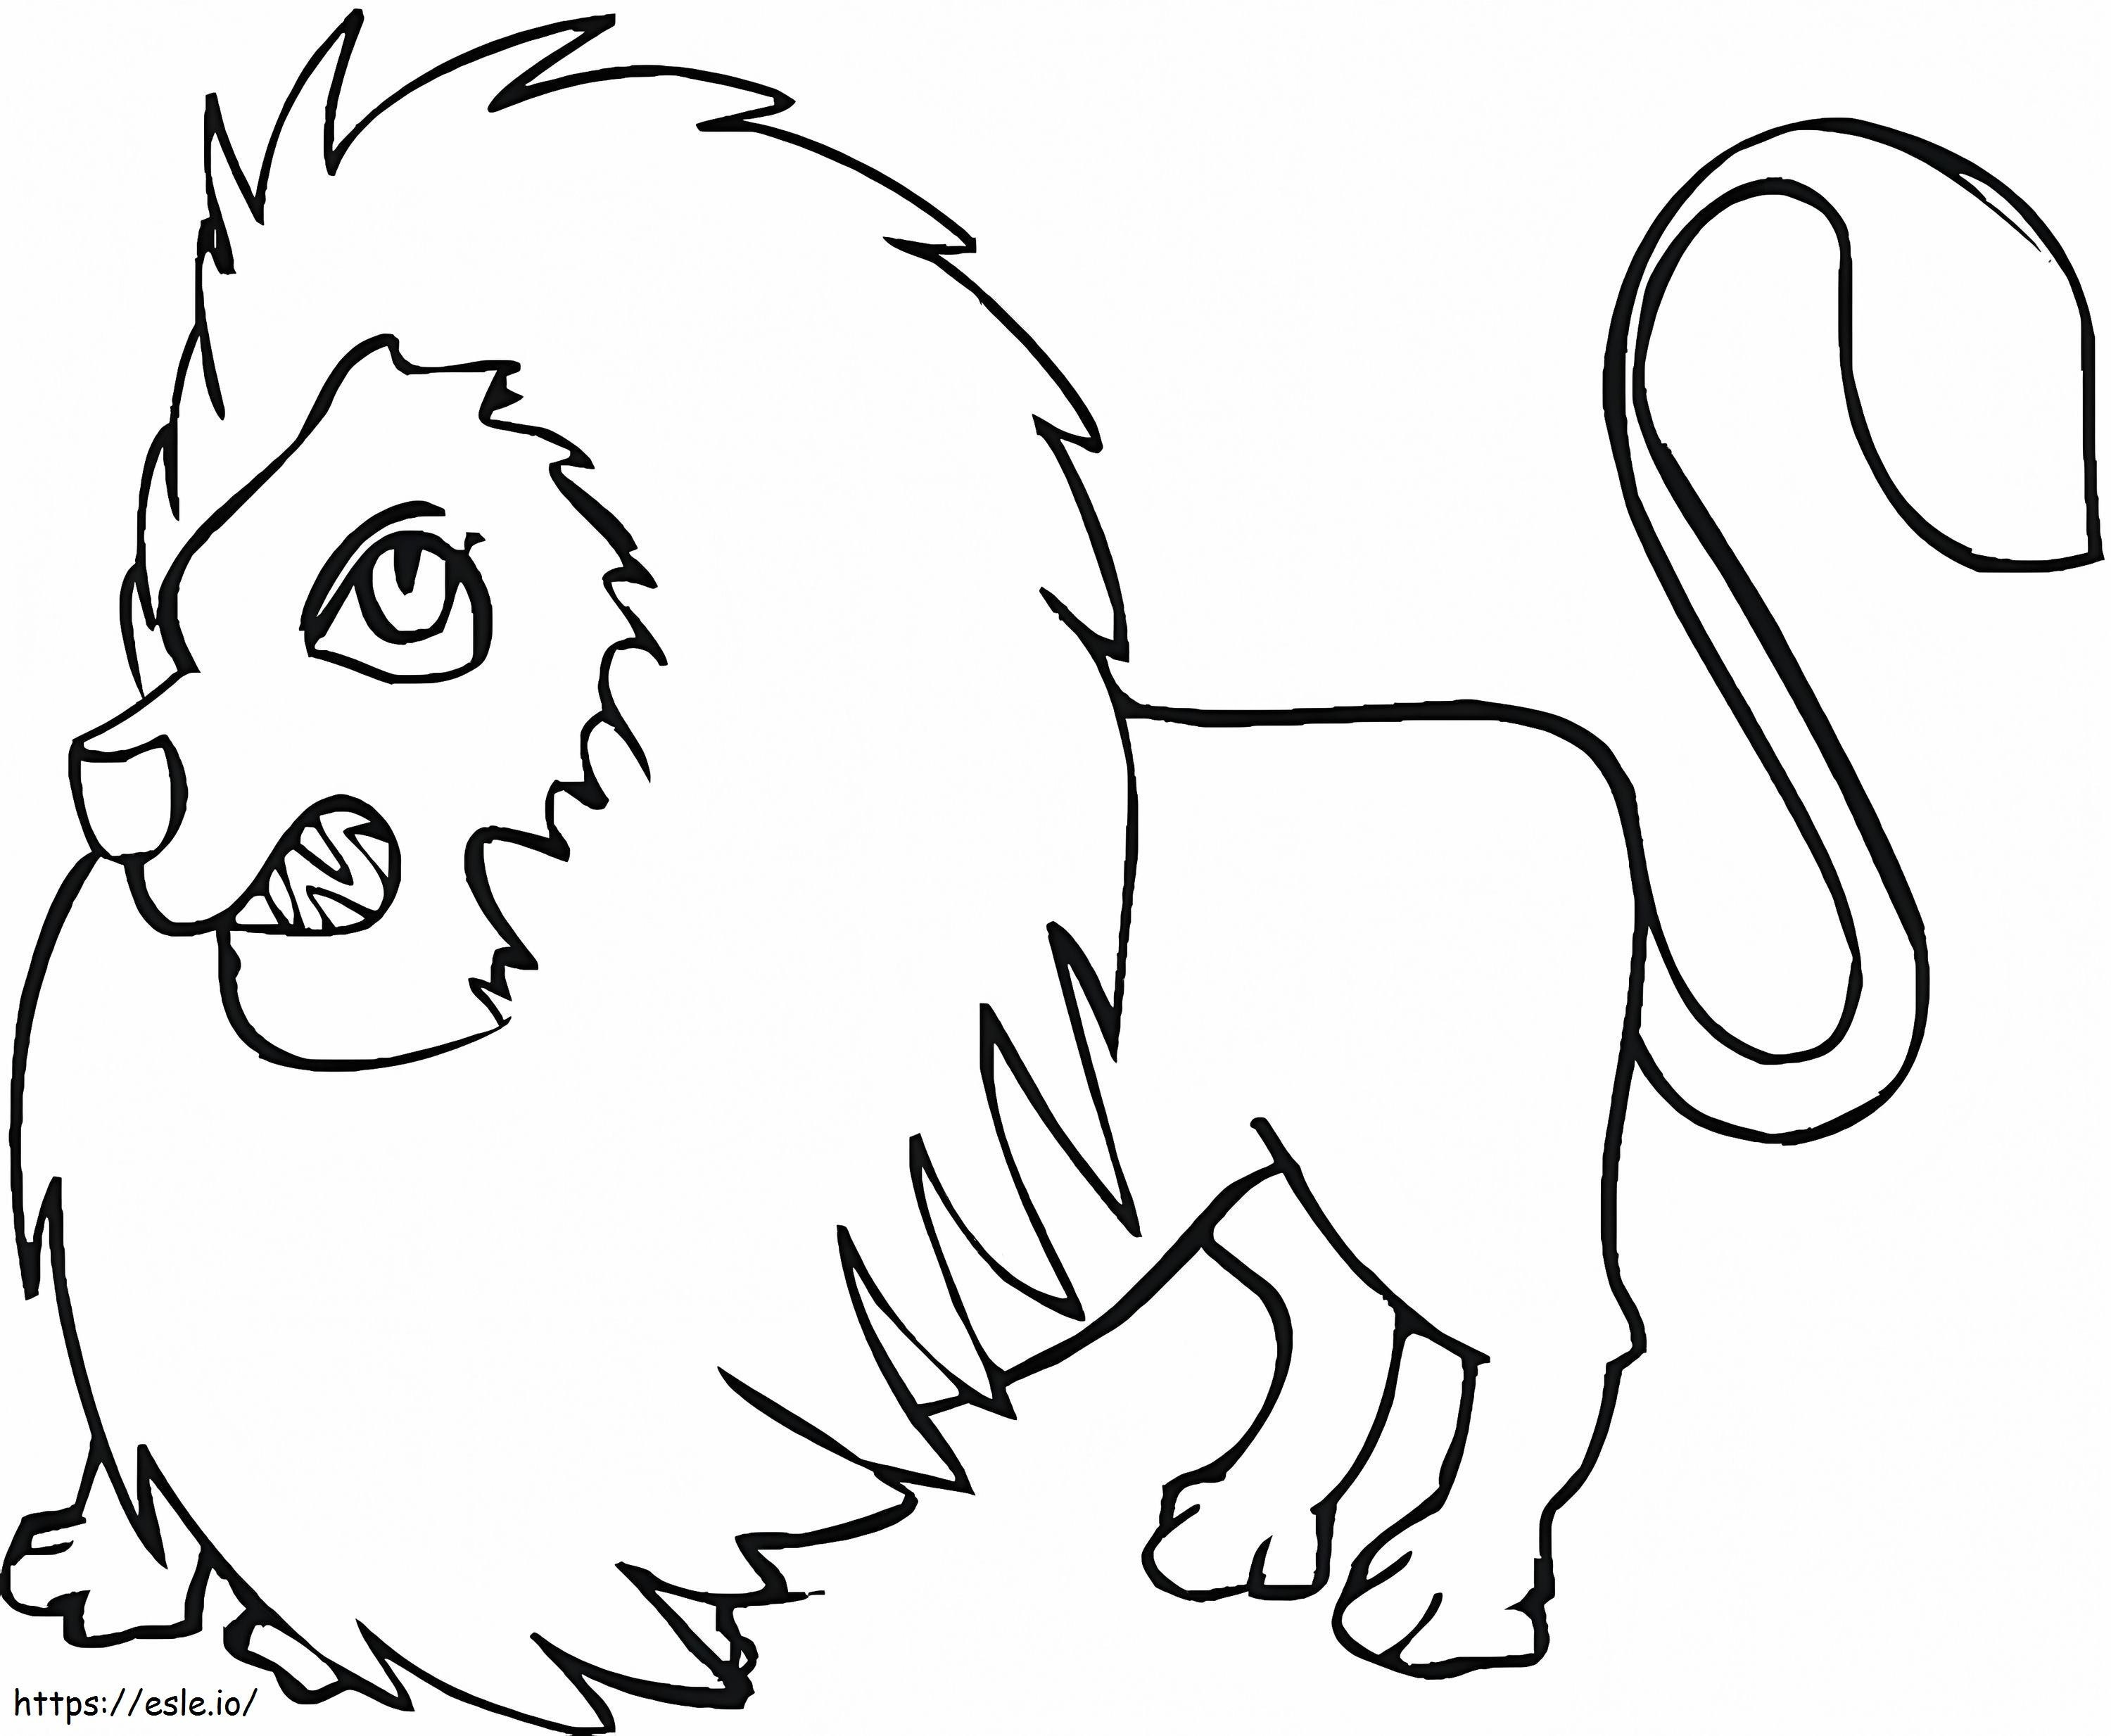 Wütender Löwe ausmalbilder